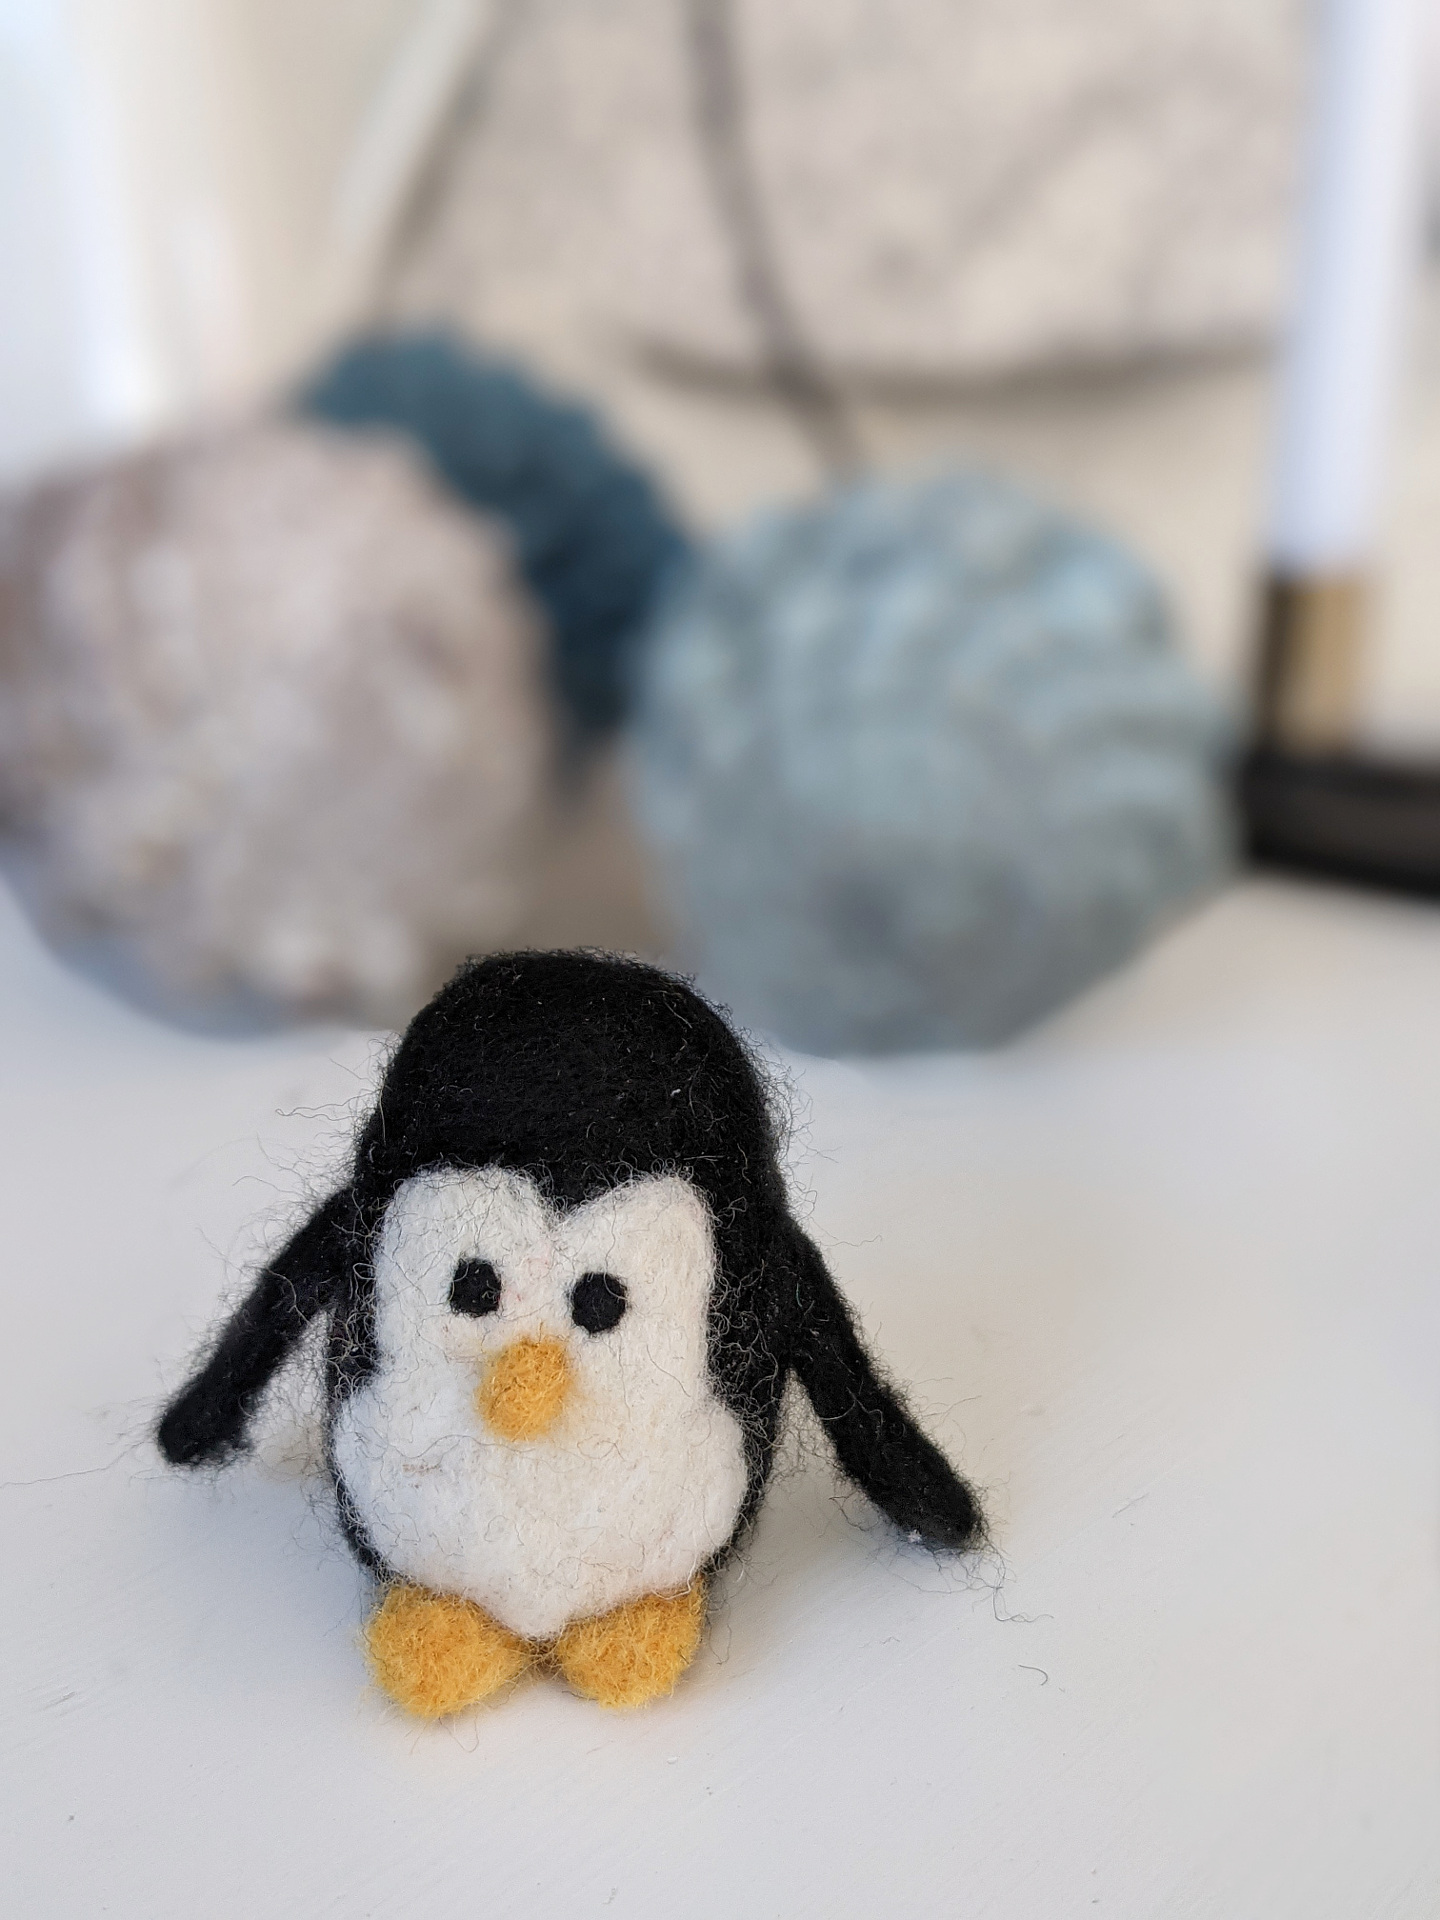 Pinguin filzen Anleitung